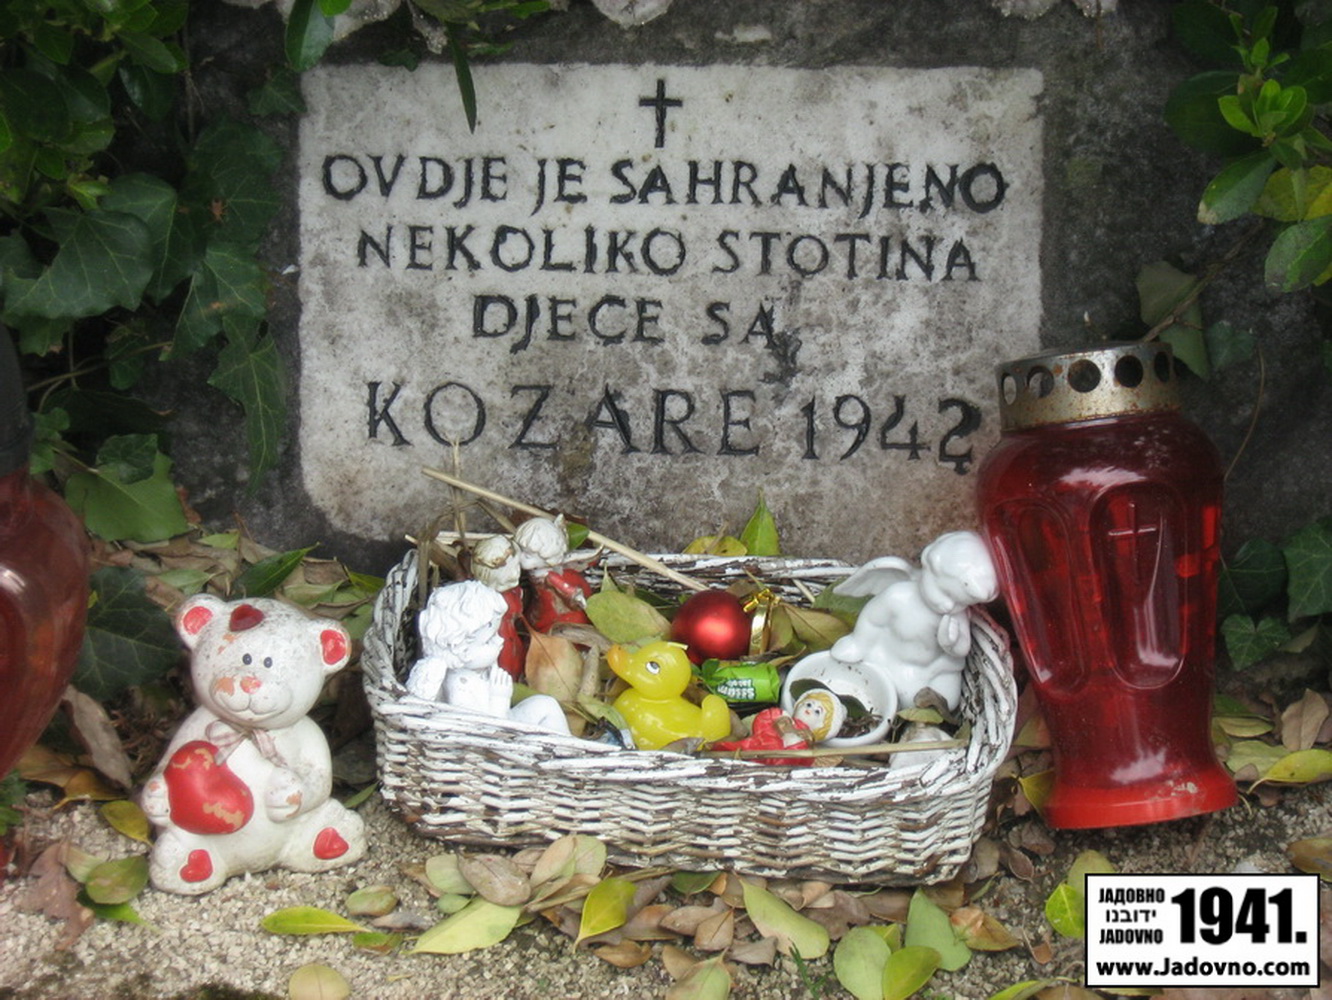 Spomenik srpskoj djeci sa Kozare na zagrebačkom groblju Mirogoj